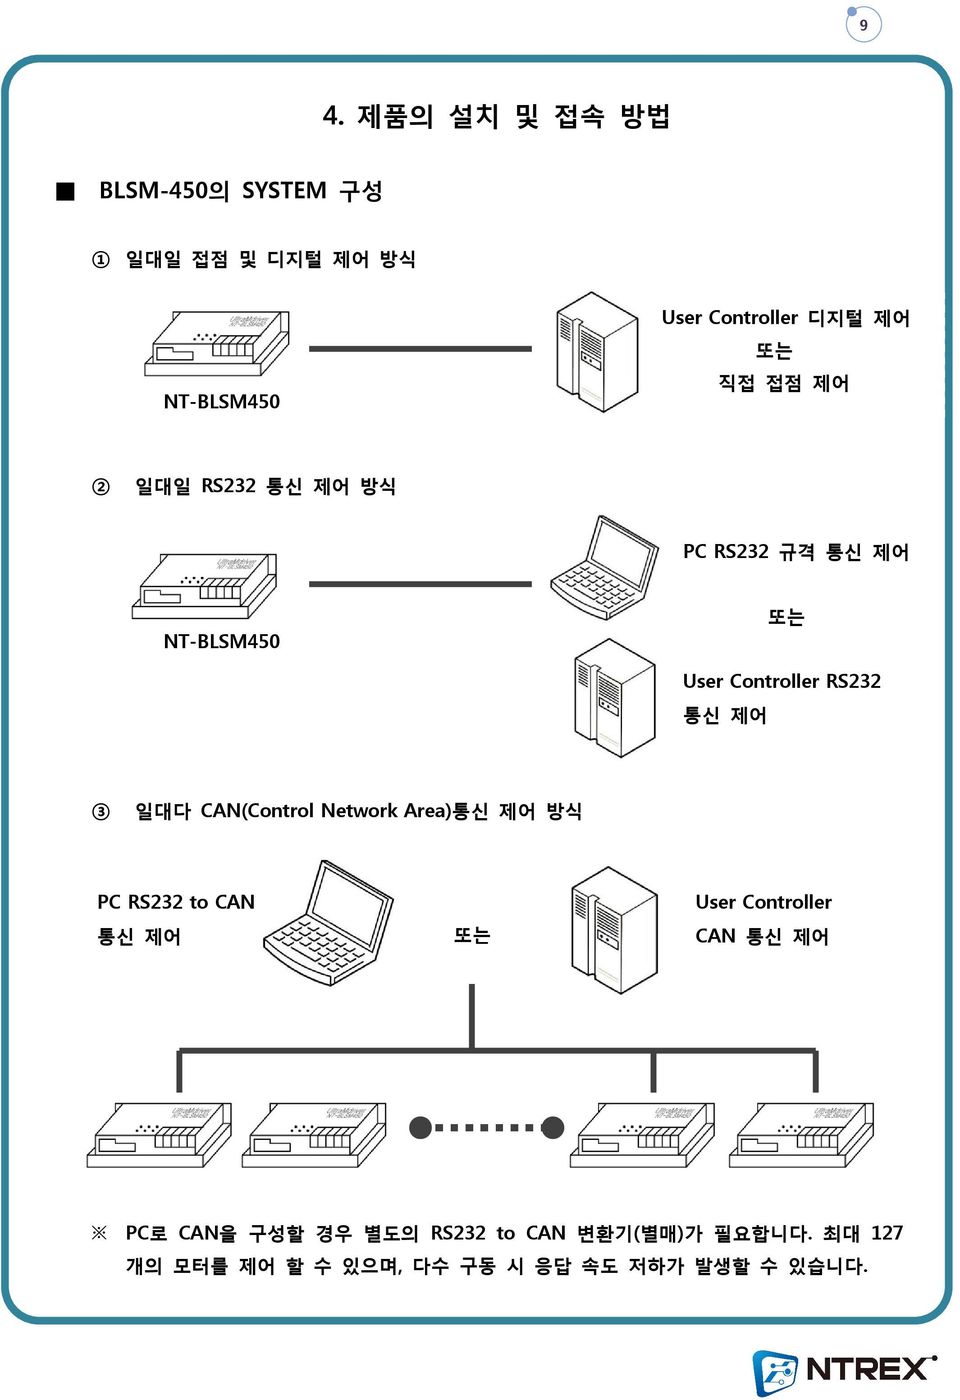 일대다 CAN(Control Network Area)통신 제어 방식 PC RS232 to CAN 통신 제어 또는 User Controller CAN 통신 제어 PC로